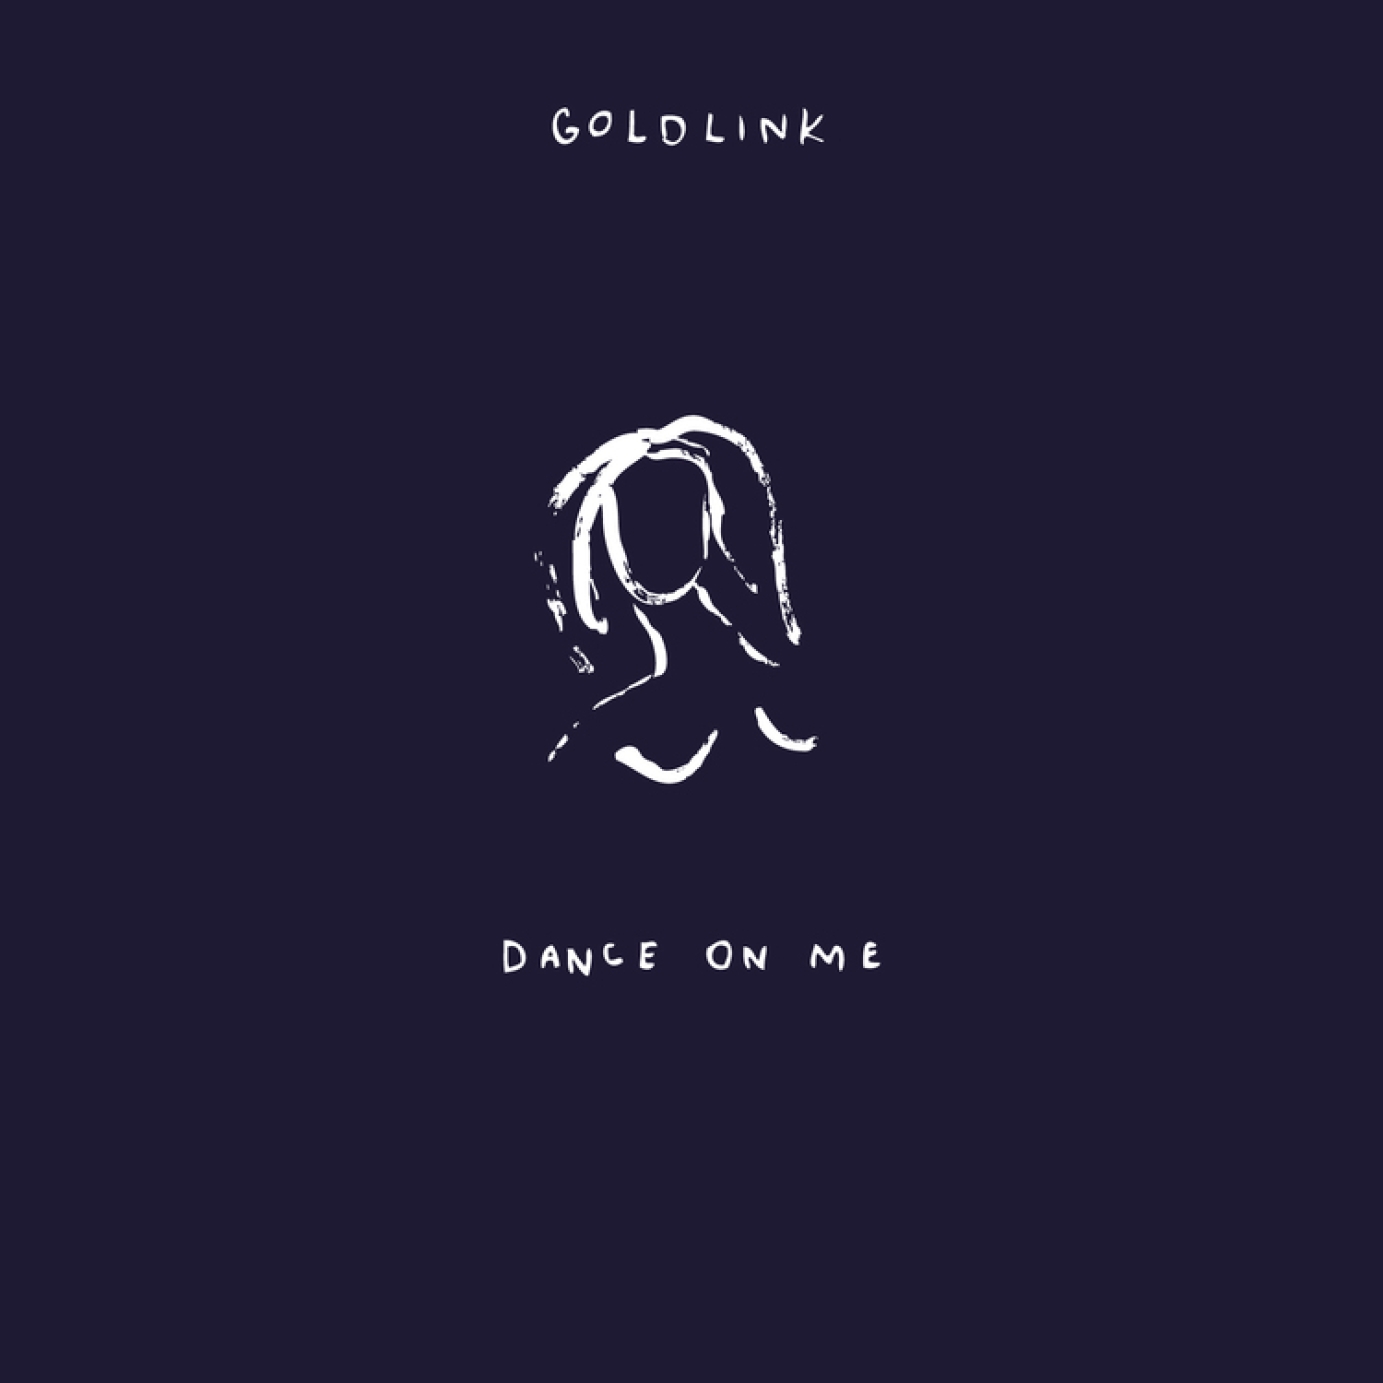 GoldLink "Dance On Me"